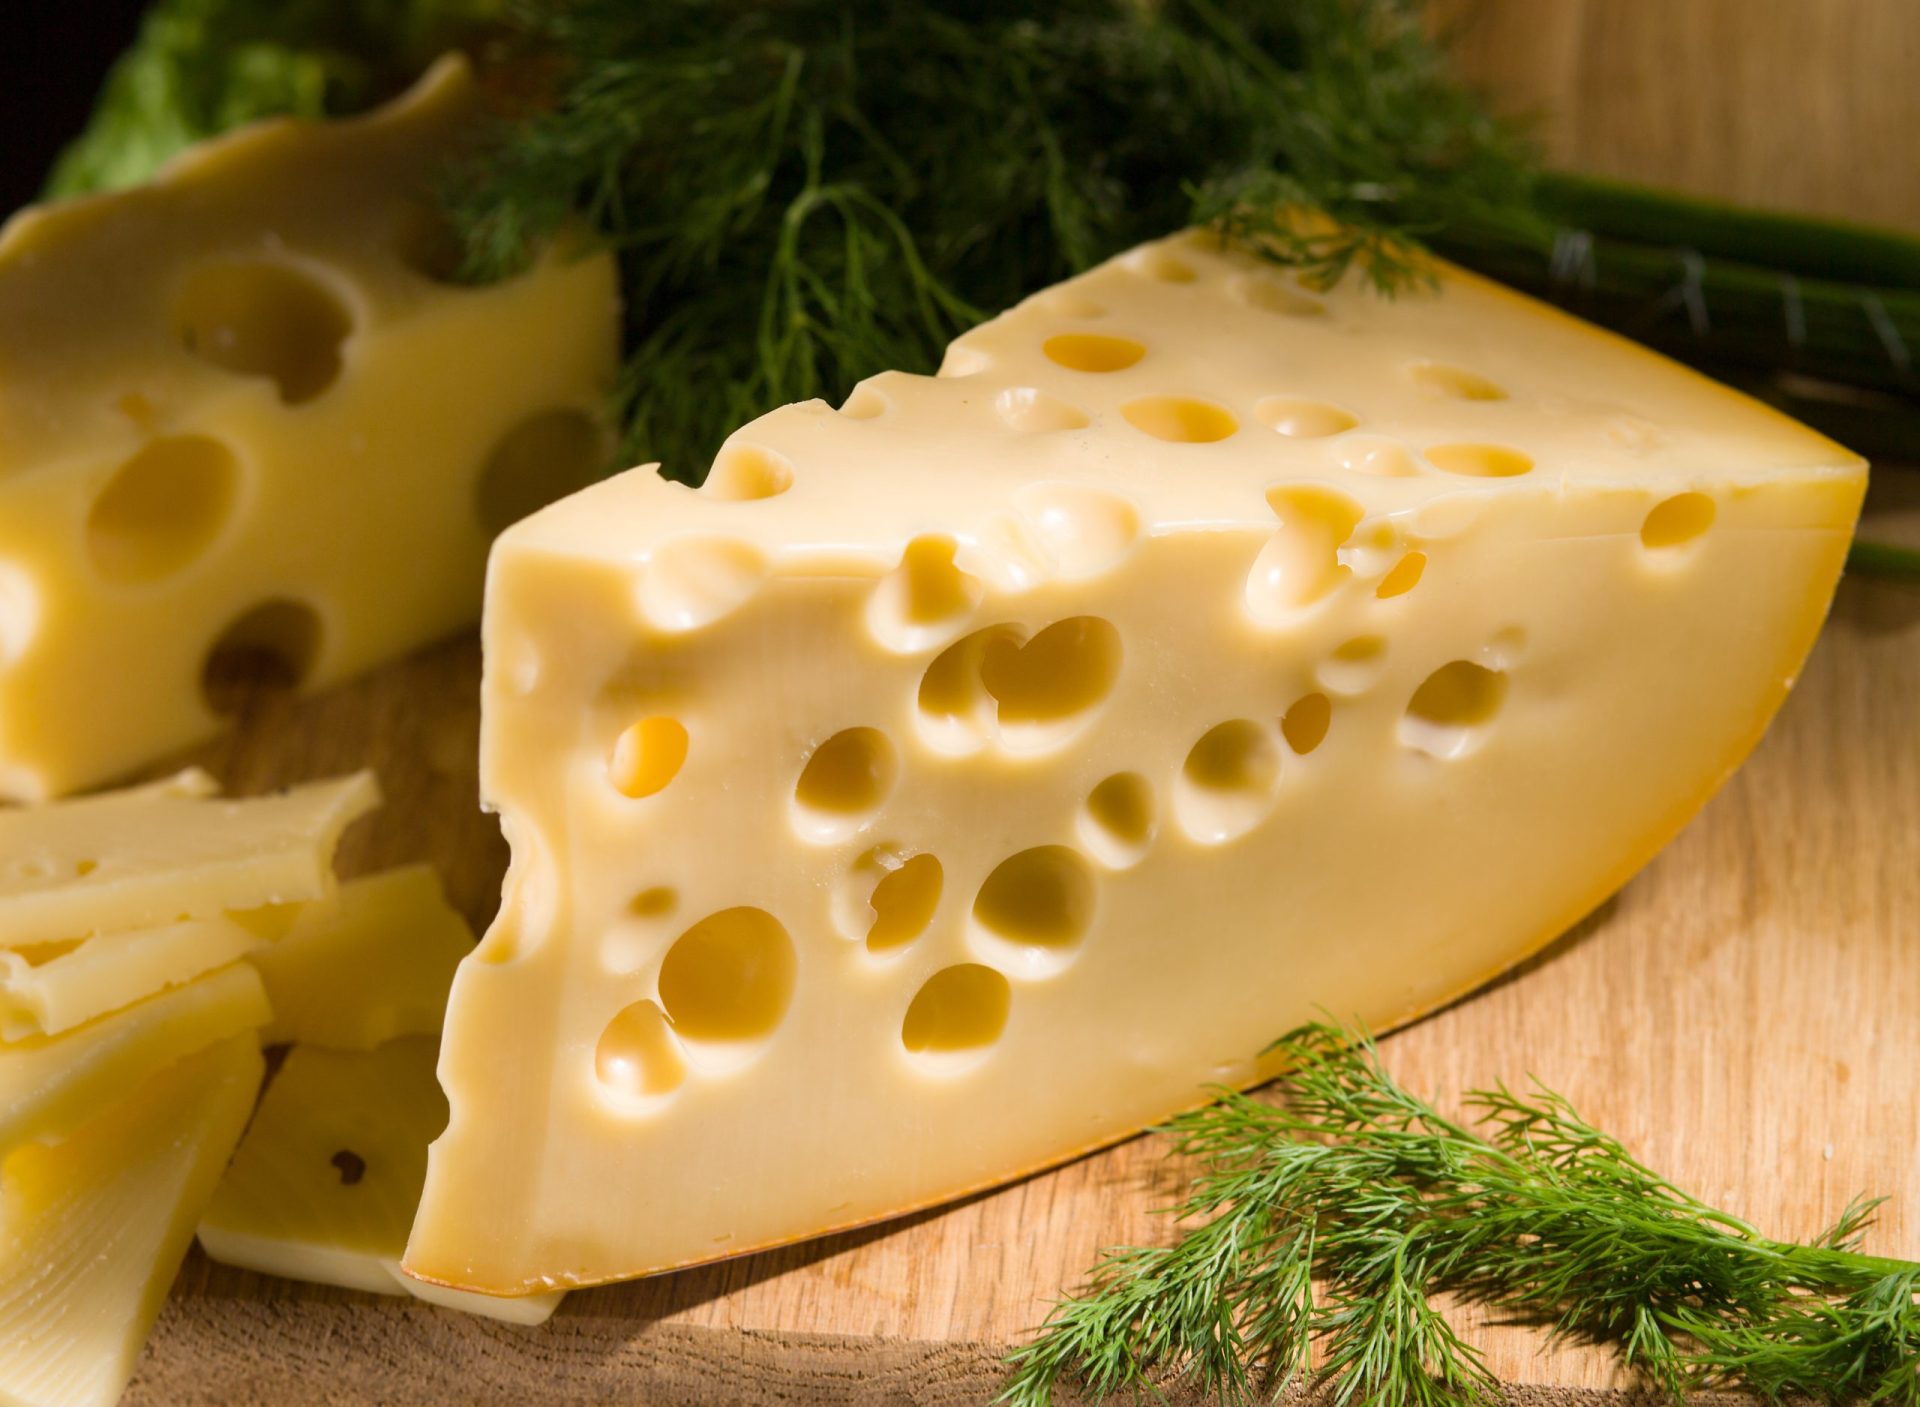 Revelado o mistério dos buracos nos queijos